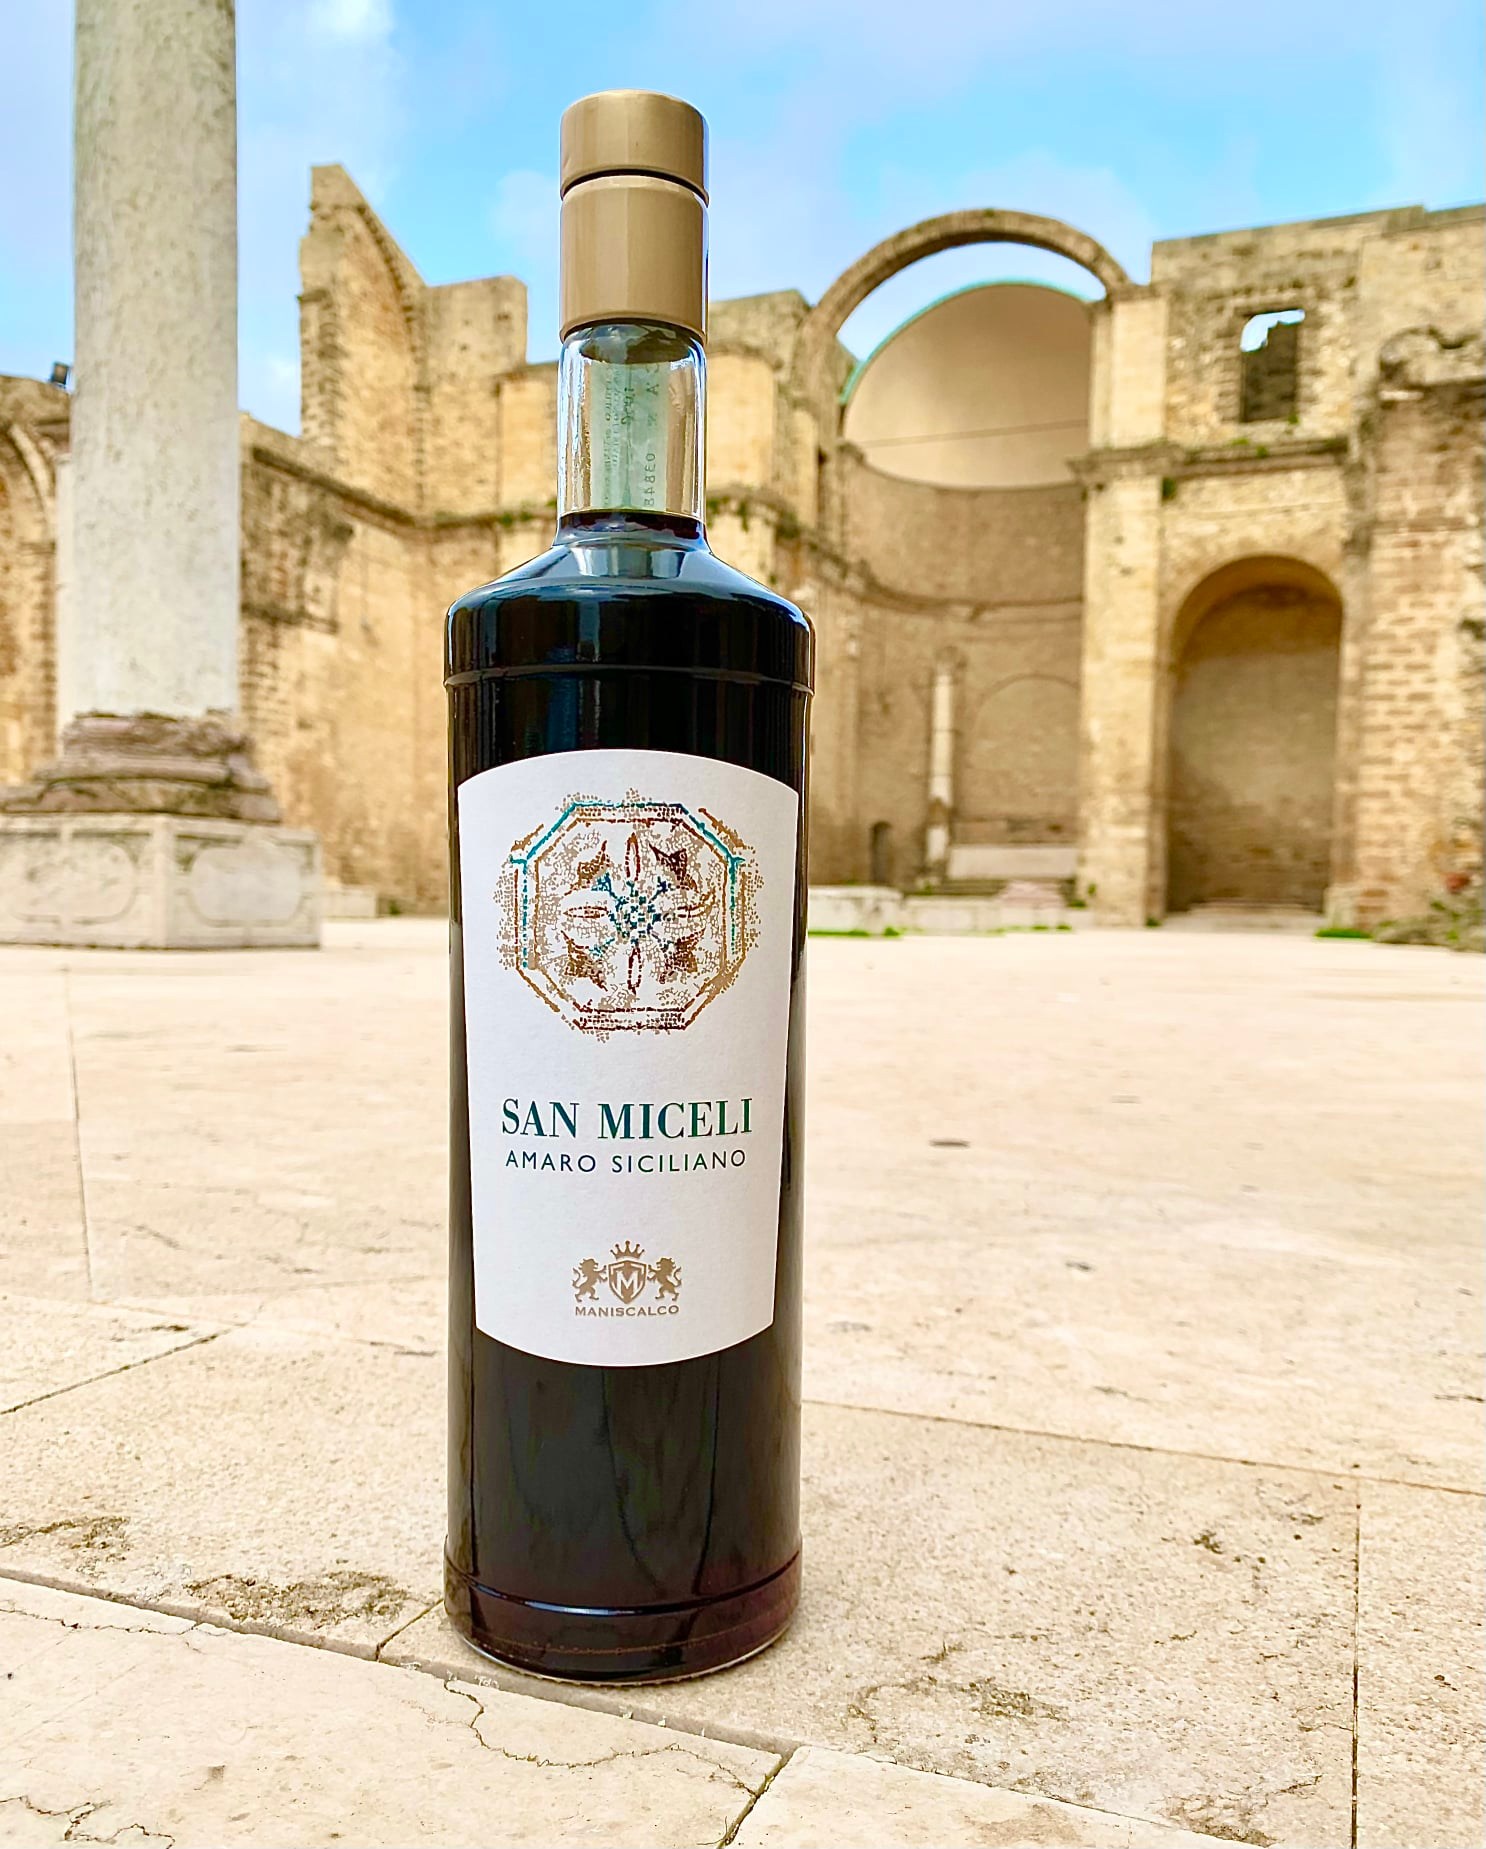 La Storia dell’AMARO SAN MICELI dell’Azienda MANISCALCO • Liquori Siciliani e il legame con il Sito Archeologico di San Miceli a Salemi